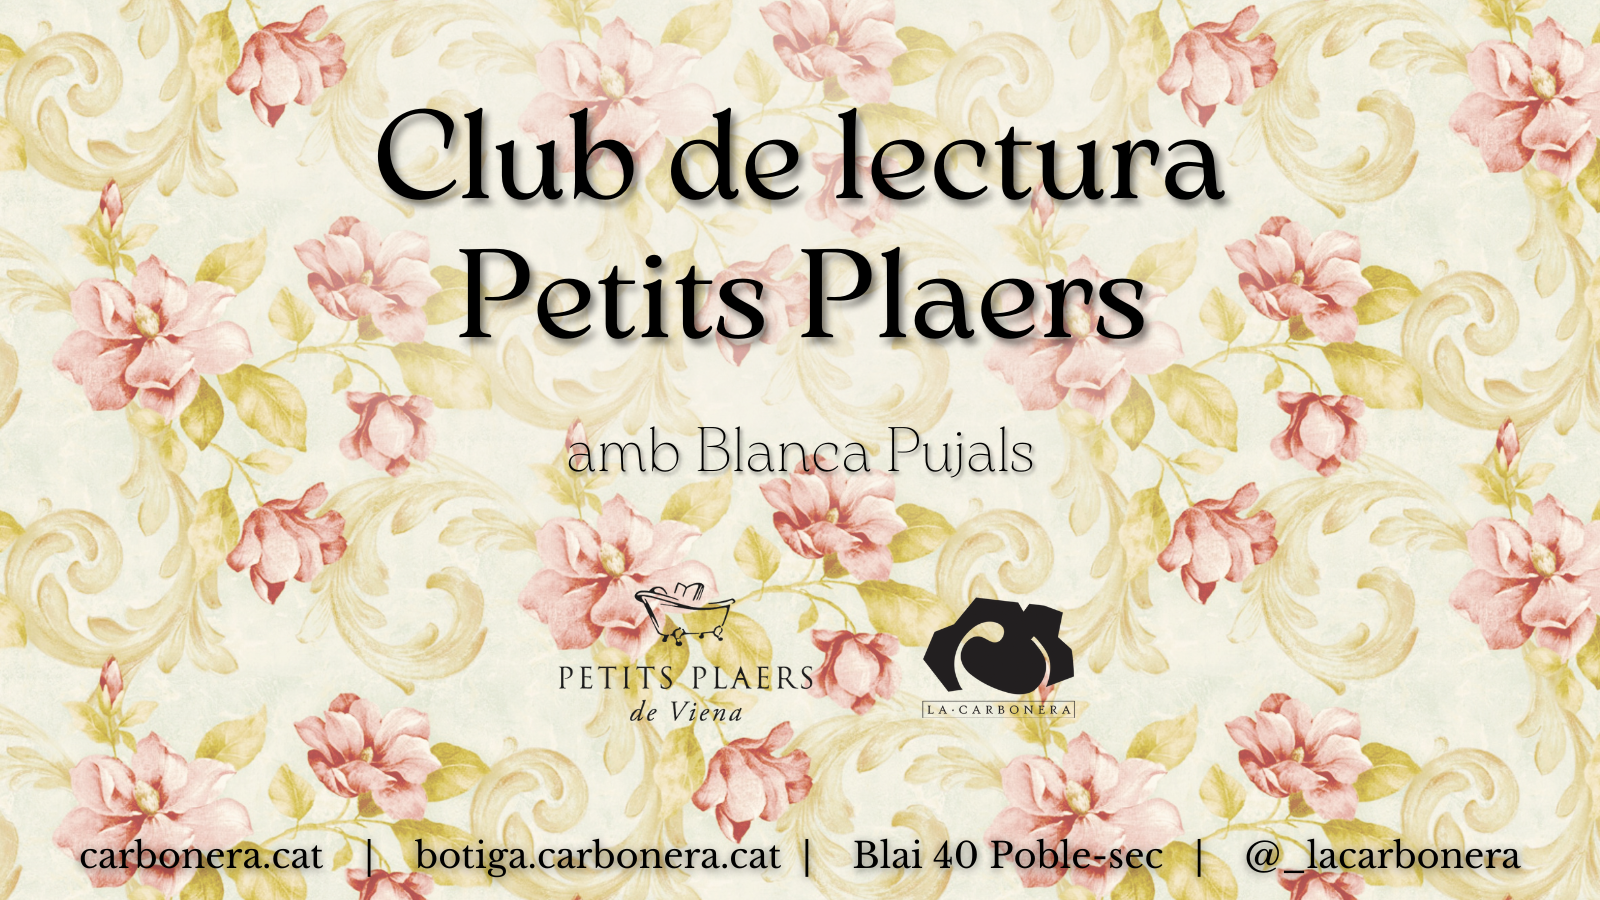 CL Petits Plaers - La canya rebel